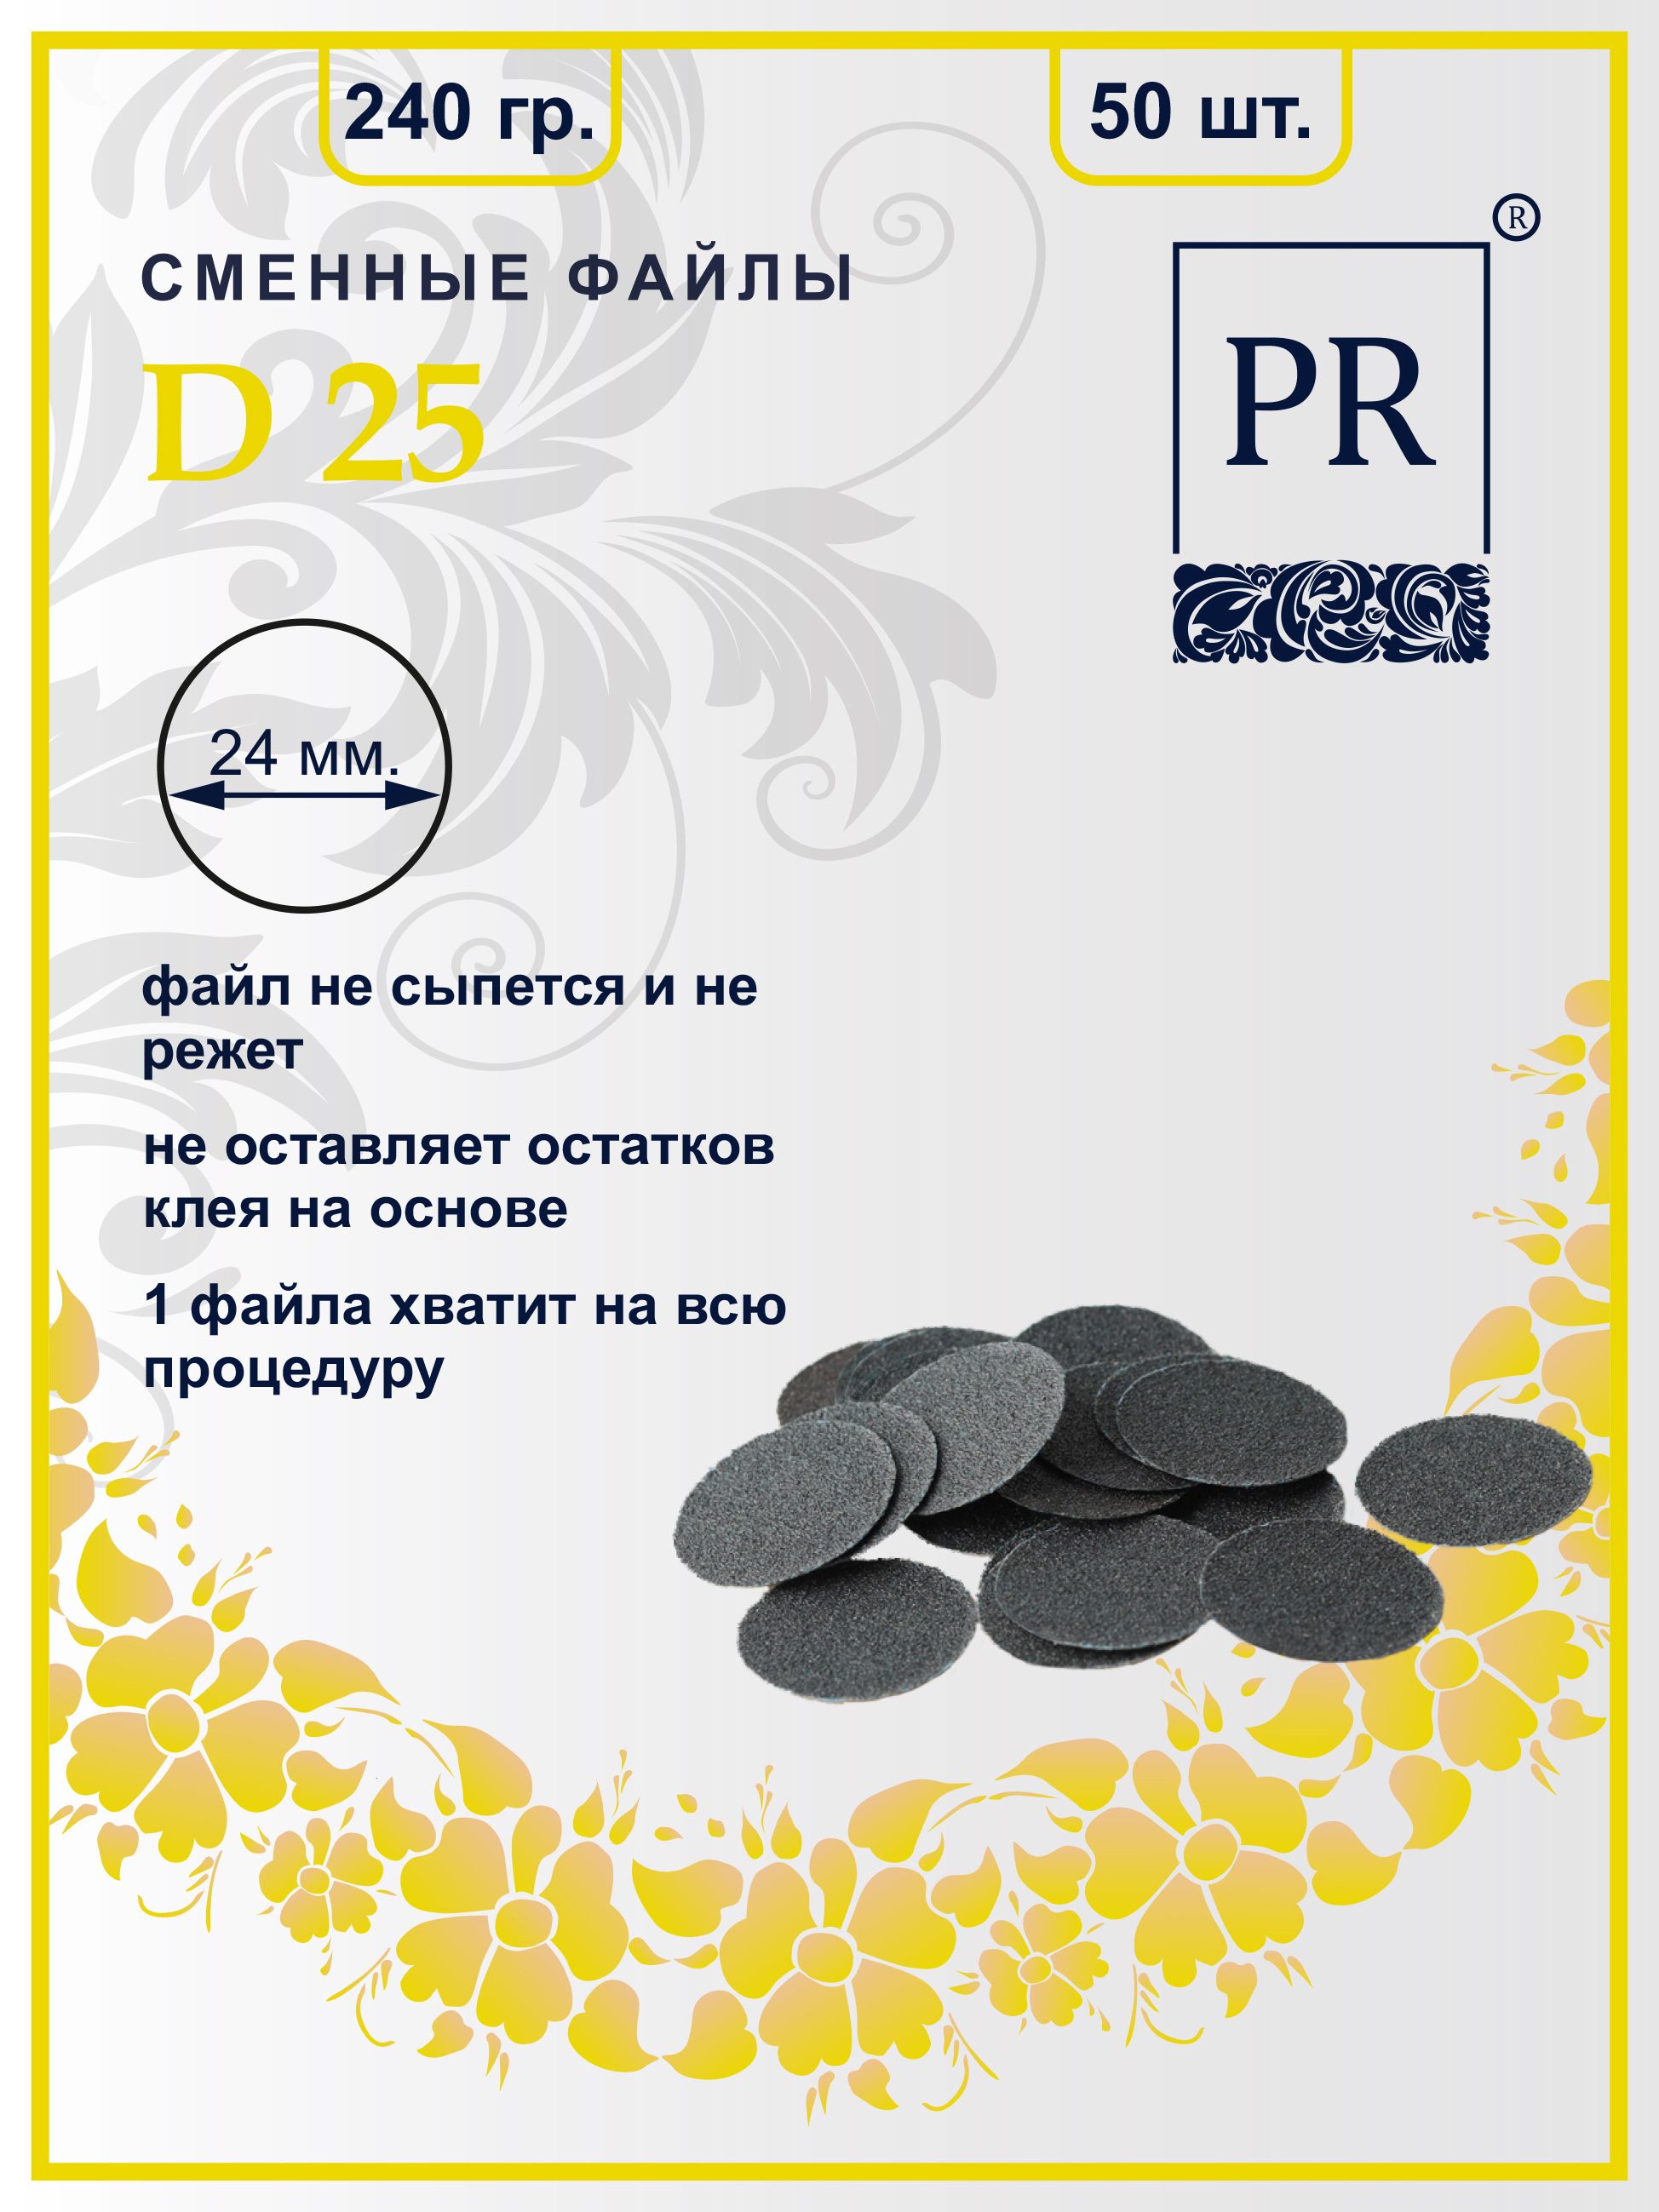 Сменные файлы Pilochki Russia диски для педикюра для диска L 240 грит 50 штук